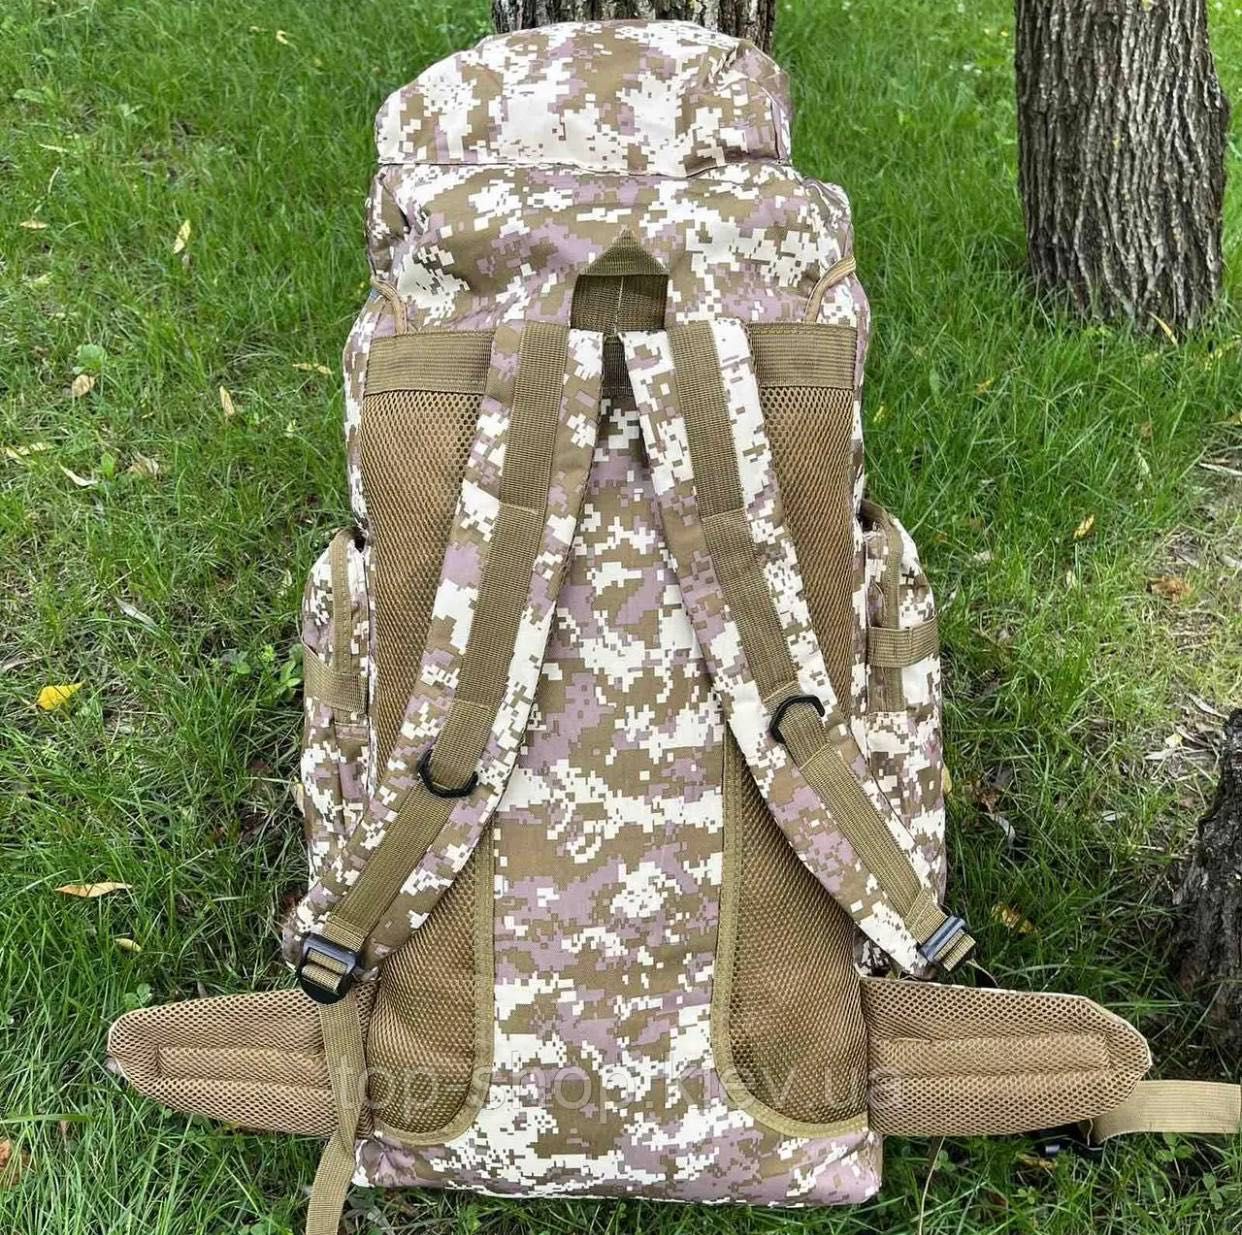 УЦІНКА!!! Тактический рюкзак армейский 85л пиксель военный баул